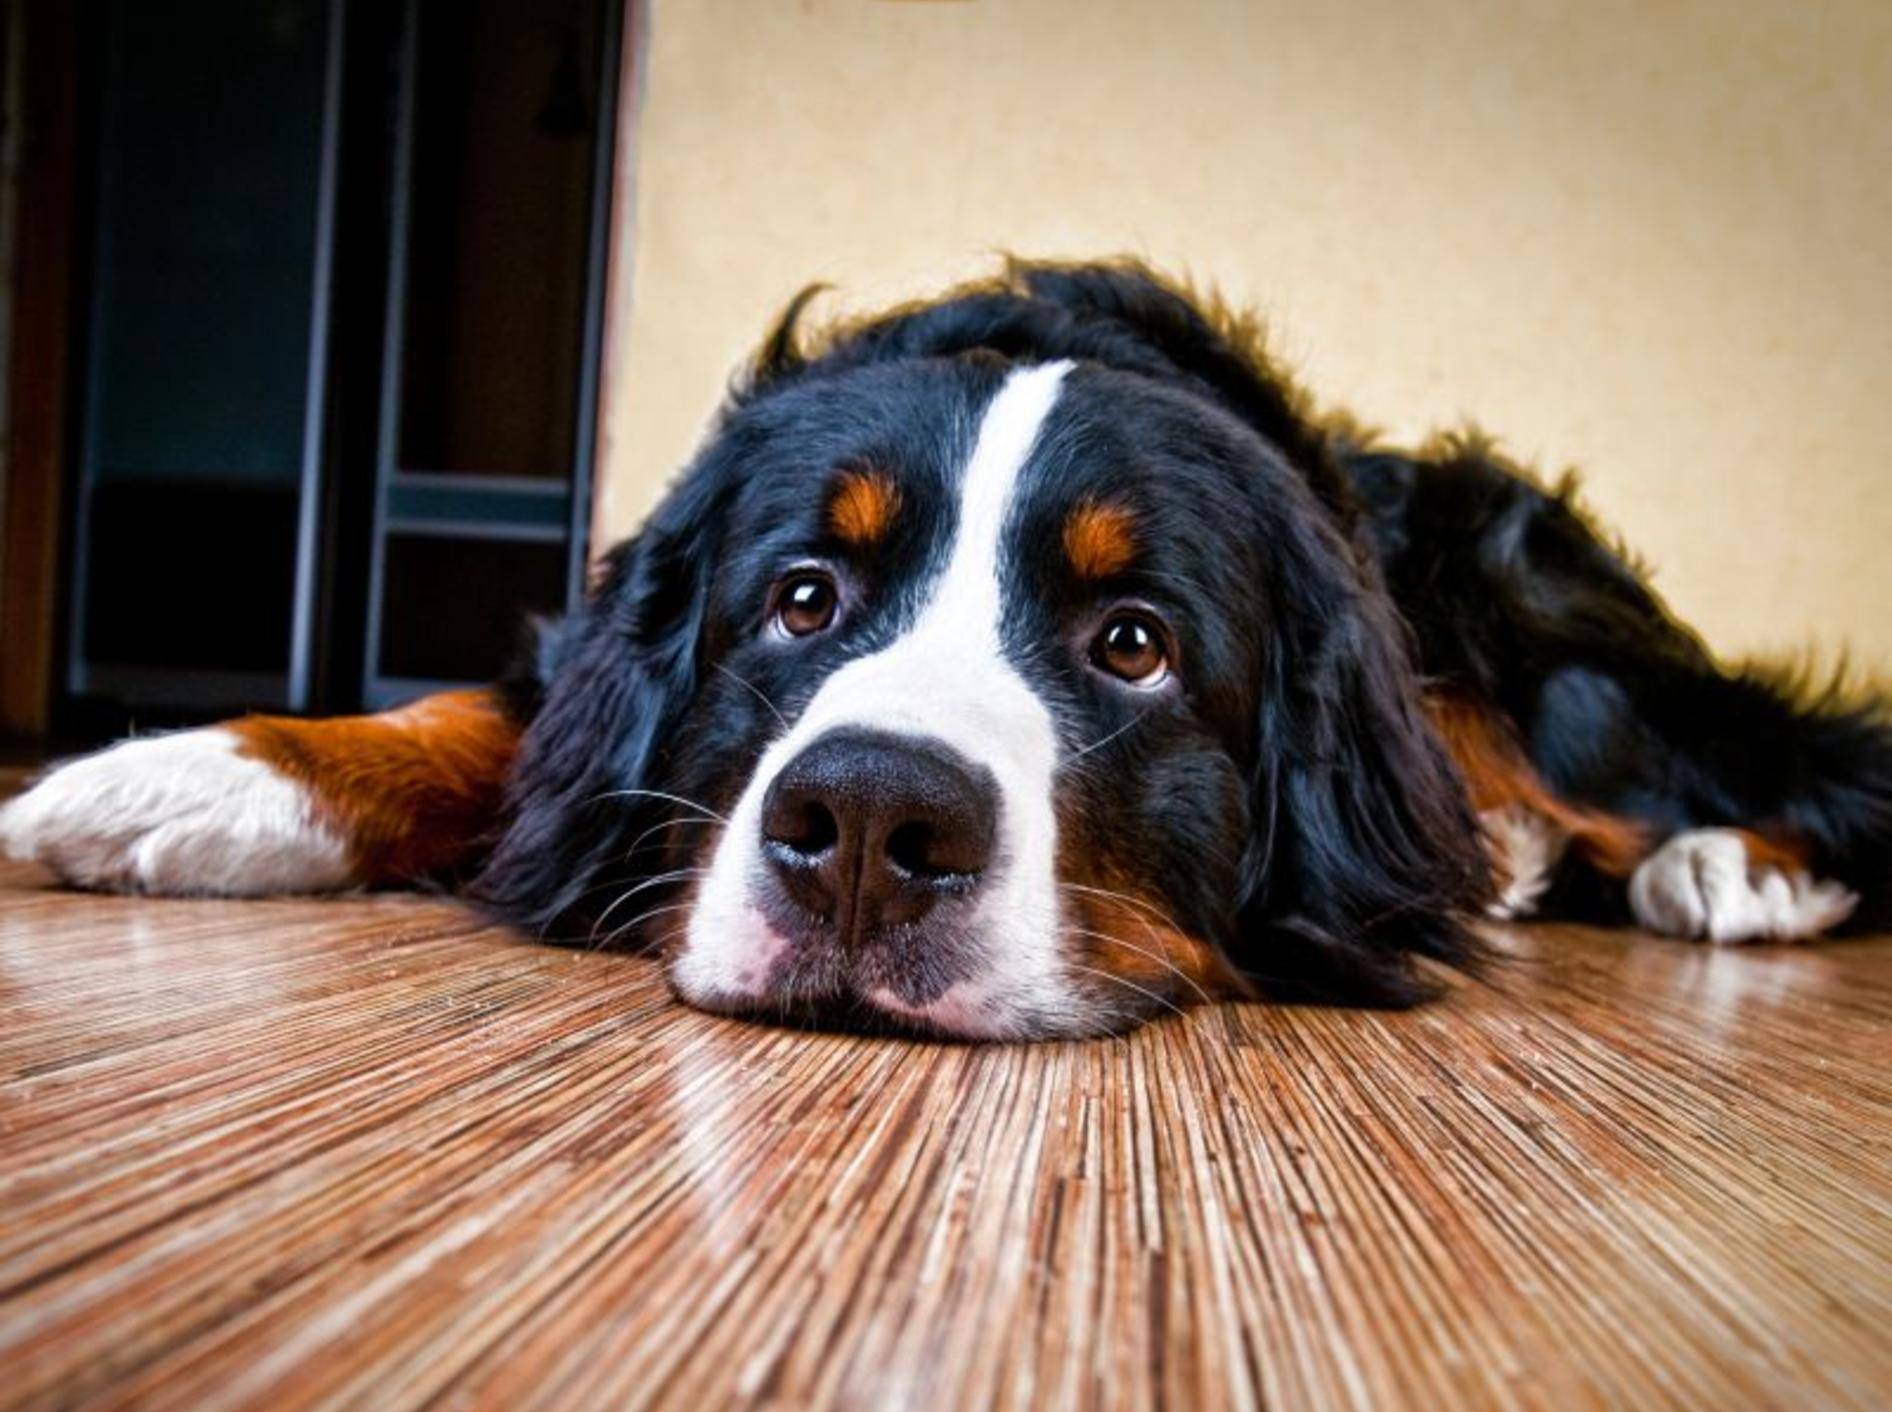 Ein erkälteter Hund wirkt meist lustlos und müde – Bild: Shutterstock / LovelyColorPhoto